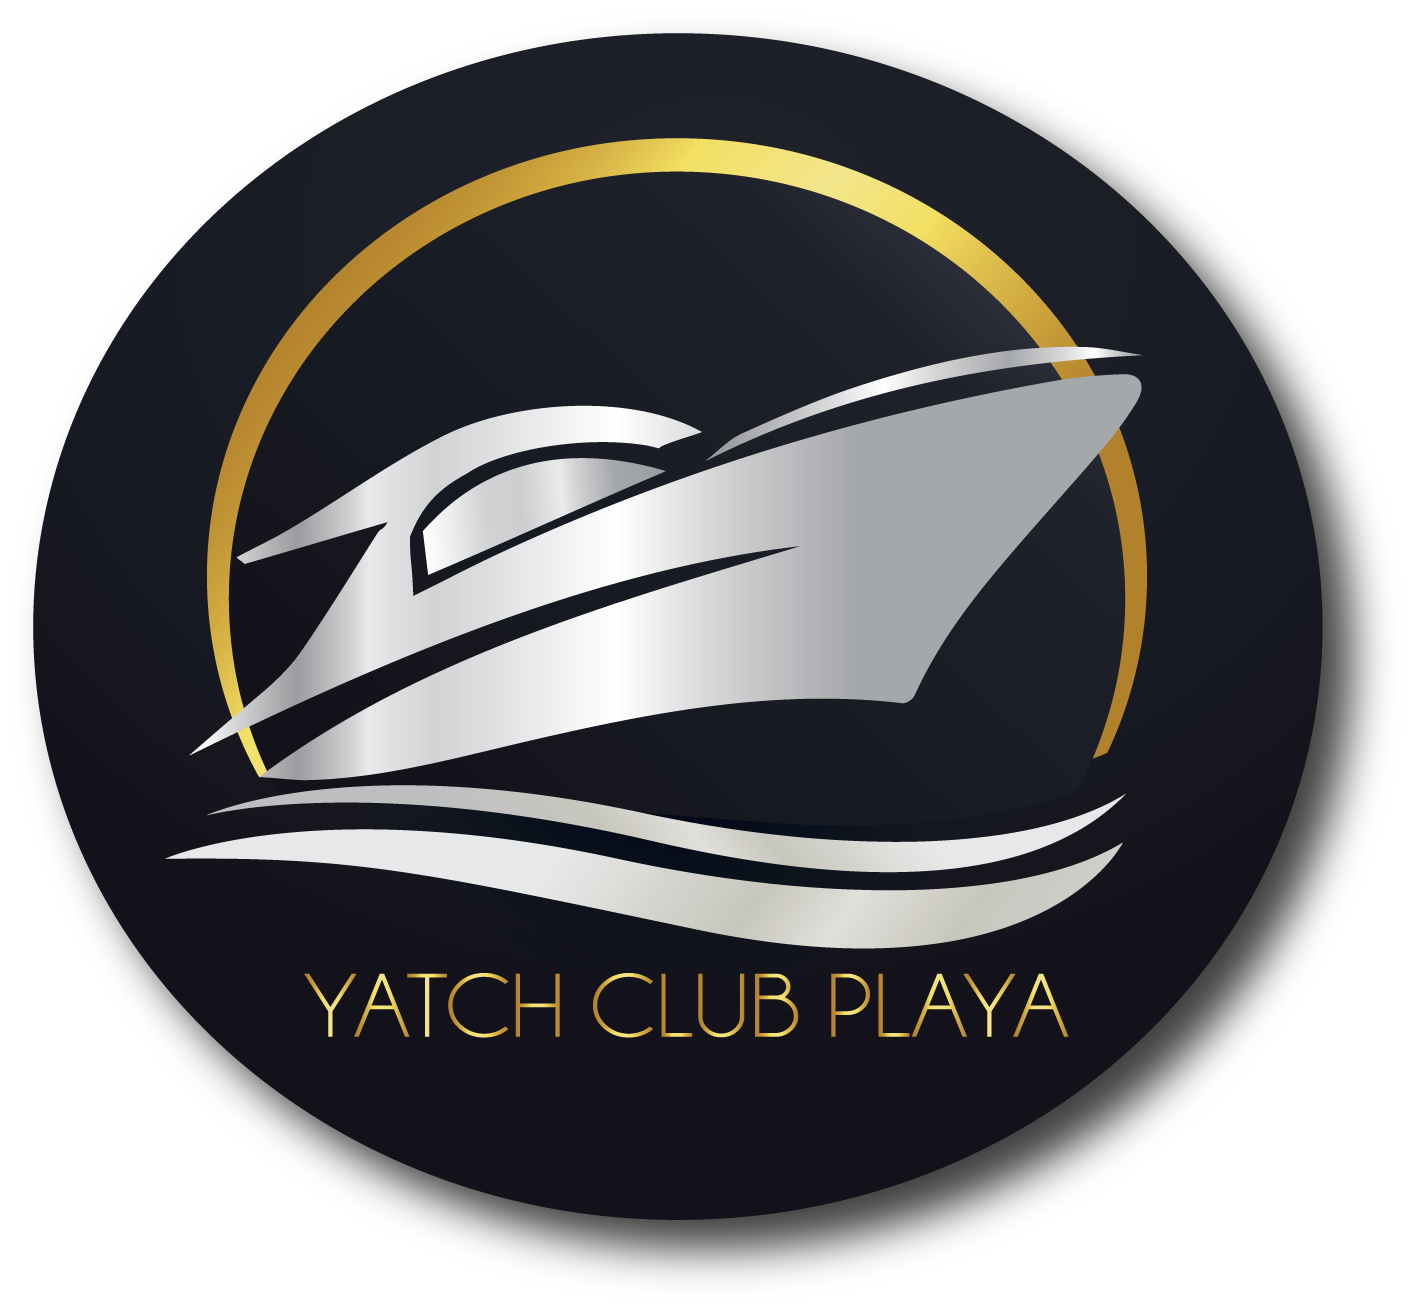 Yacht Club Playa